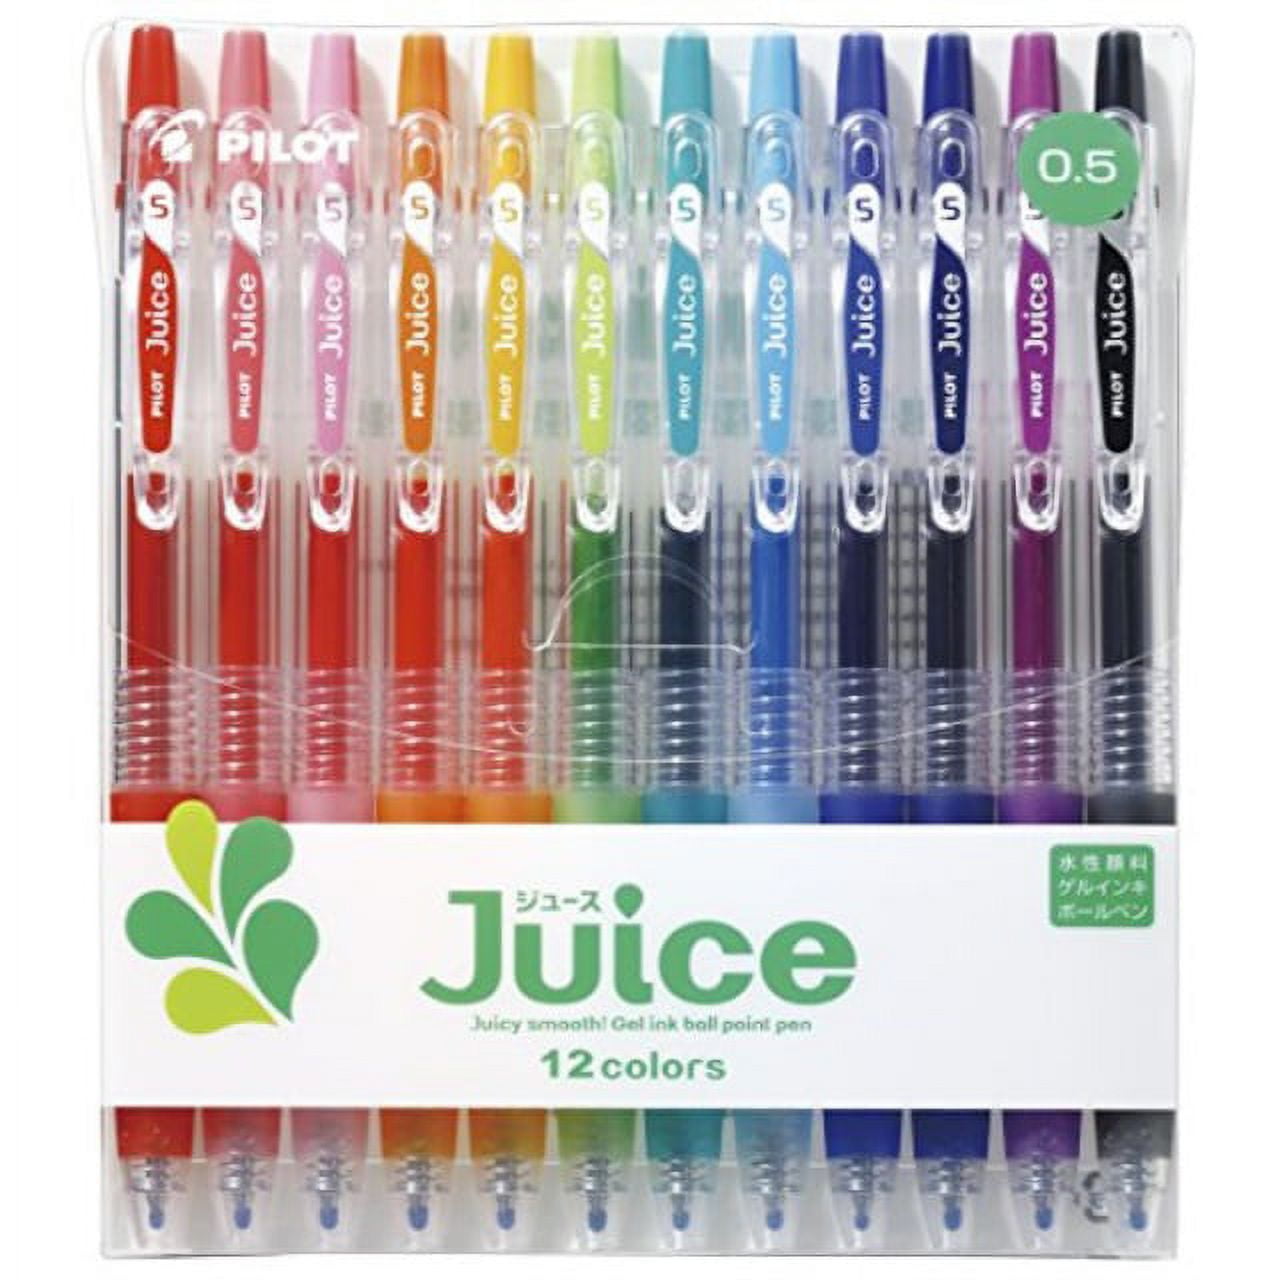 Sharpie Sharpie Pens, Fine Point (0.4mm), Assorted Colours, 8 Pack - 8x1.0  ea